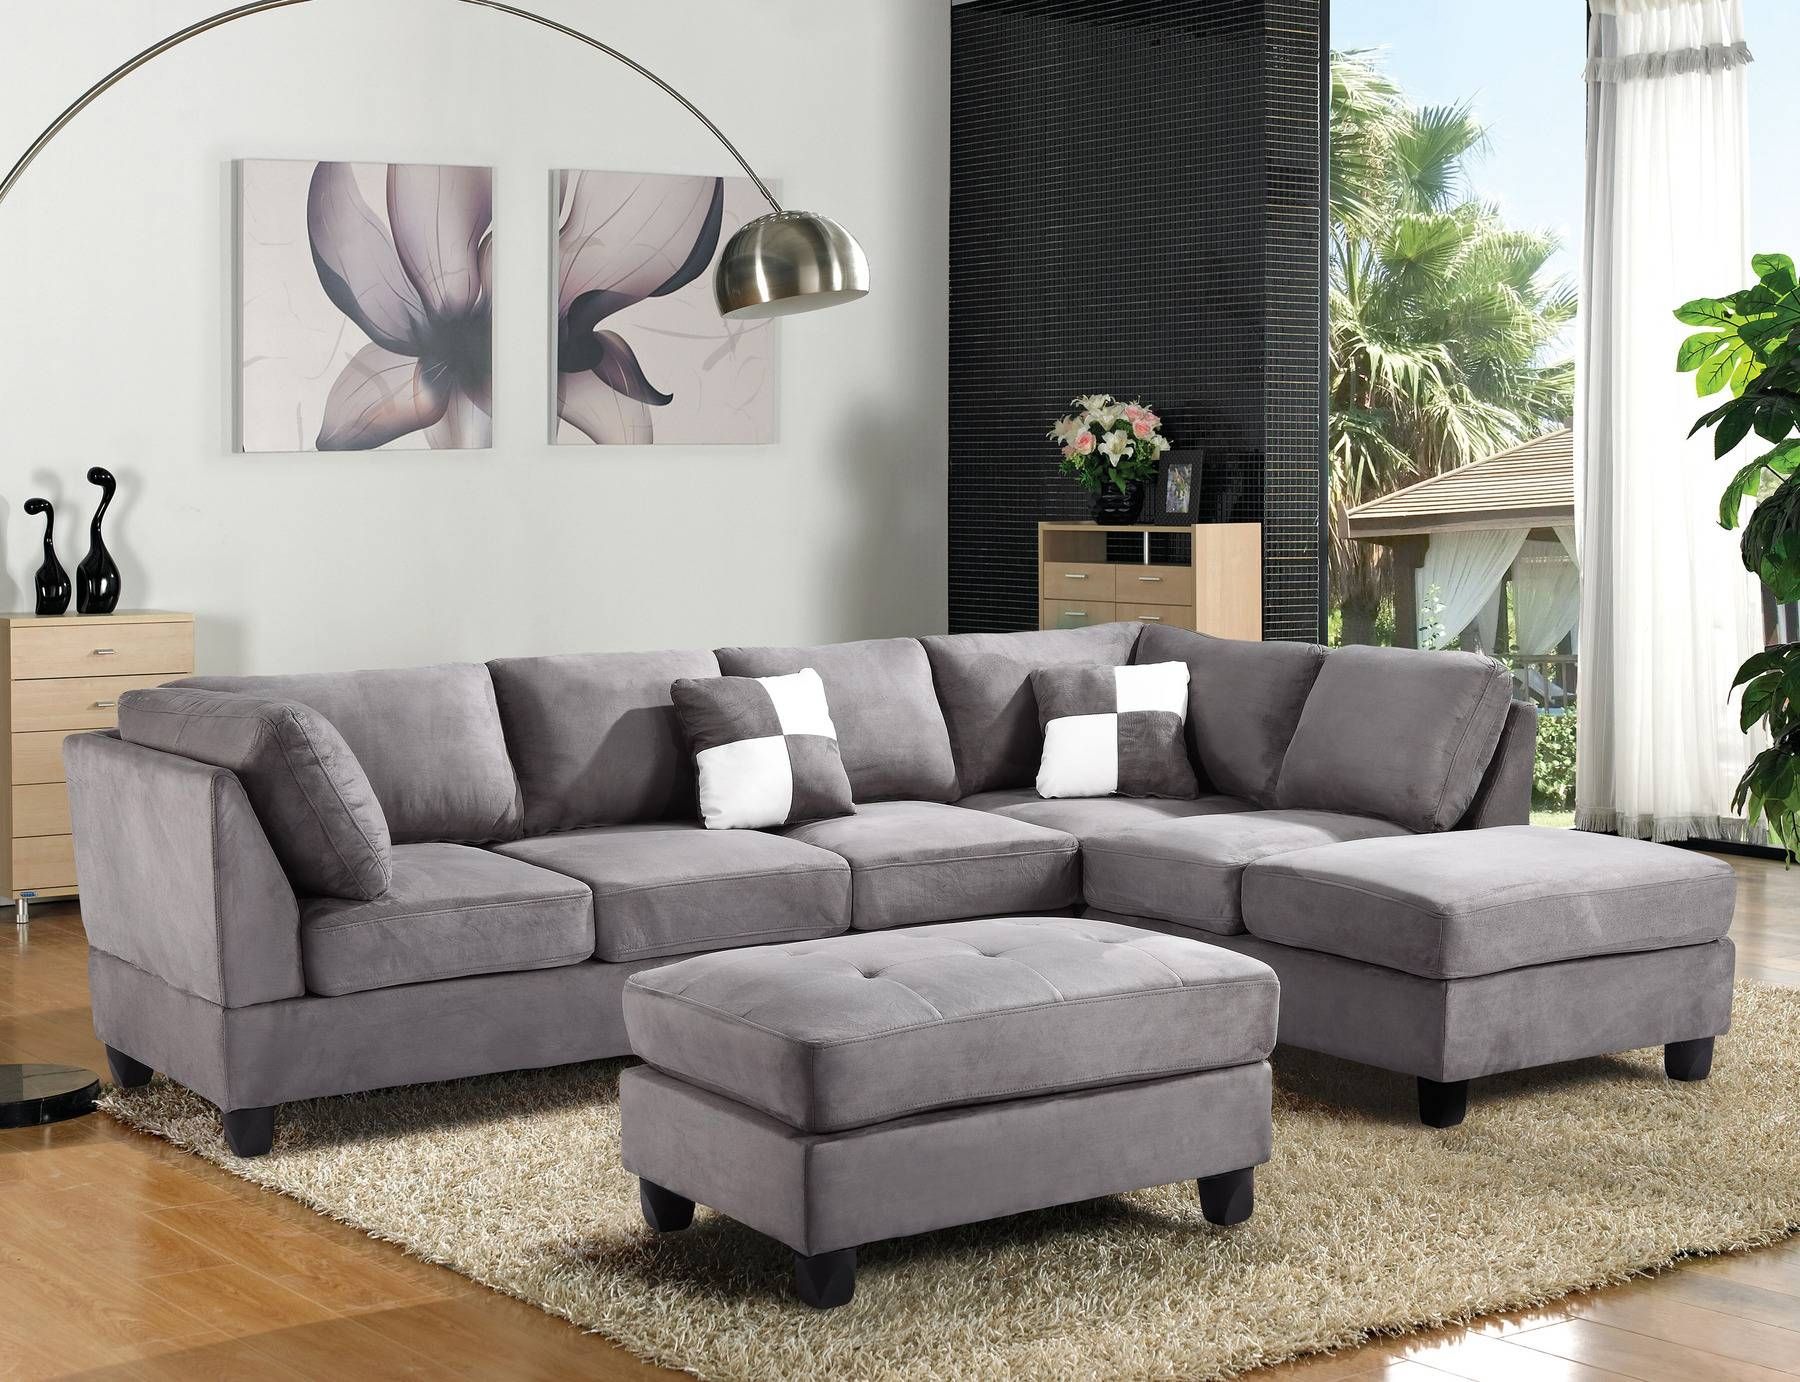 Sofa : Leather Sofas Orange County Home Design Wonderfull Pertaining To Sofas Orange County (View 4 of 30)